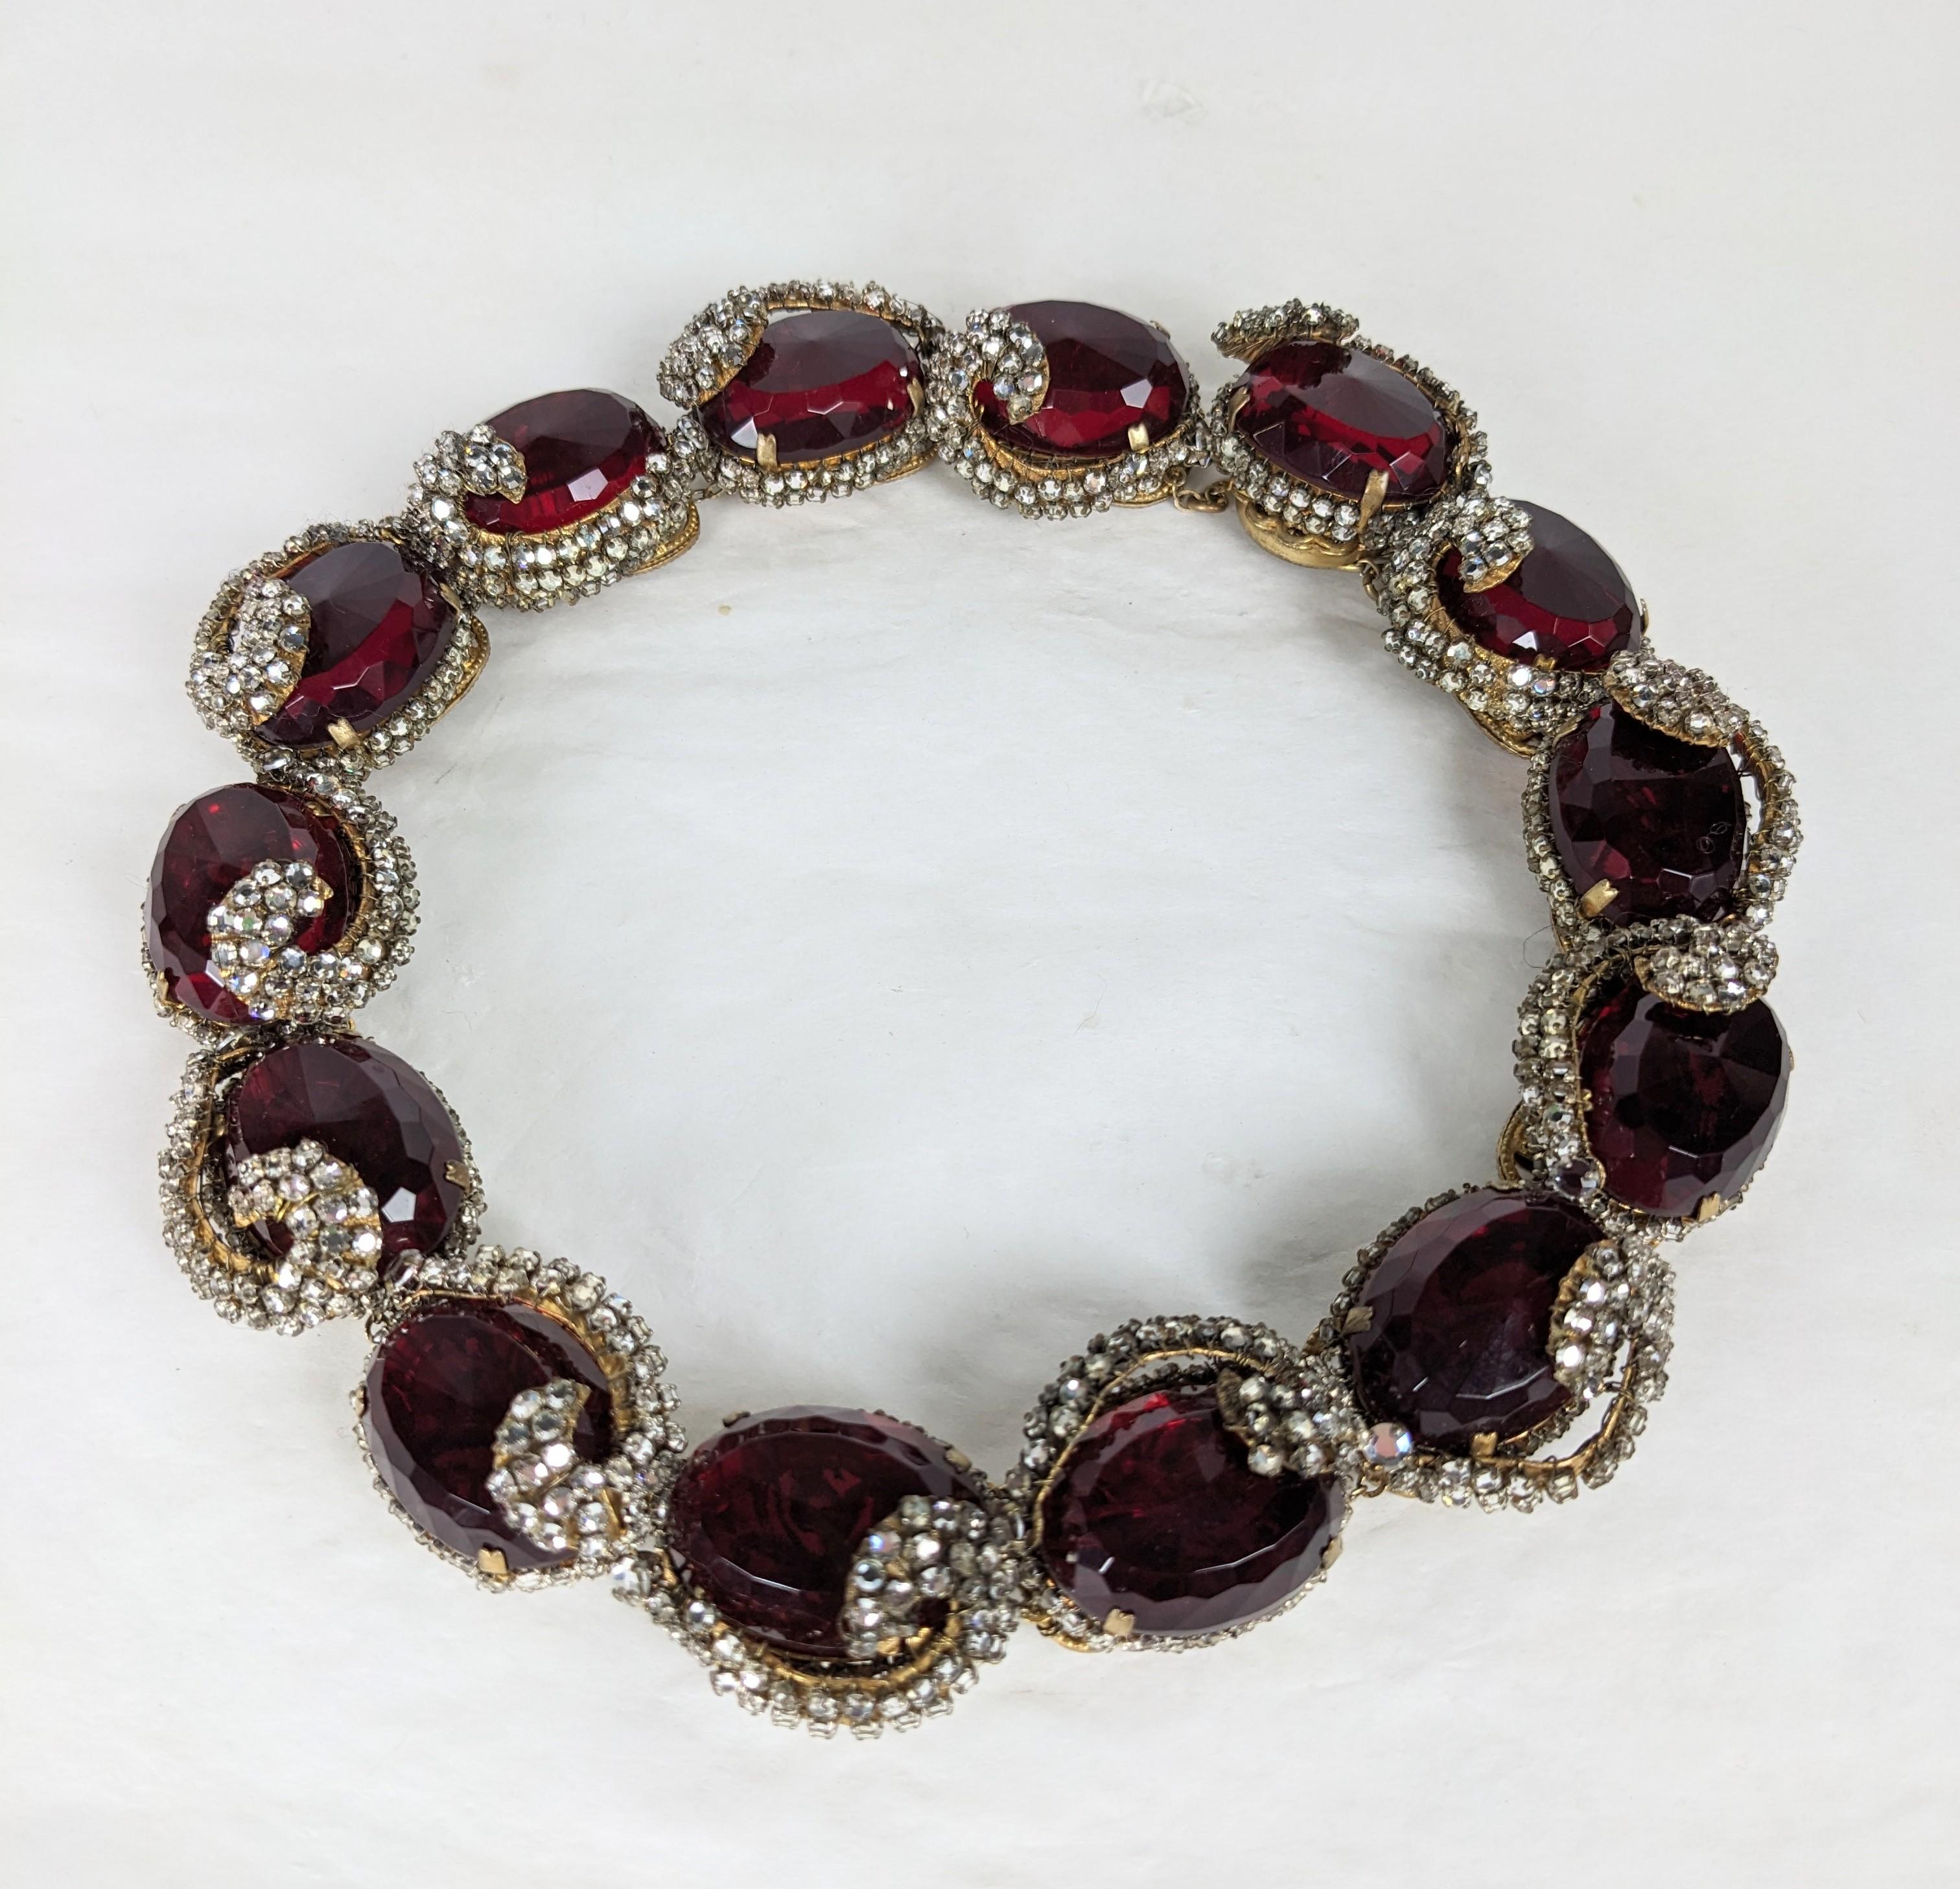 Seltene und besondere Sammlerqualität Miriam Haskell Rubin Halsband mit aufwendigen Rose Montee Crystal Swirl Dekoration aus den 1940er Jahren. Außergewöhnliche Handwerkskunst, von Hand genäht mit Hunderten von rosafarbenen Kristallen auf den